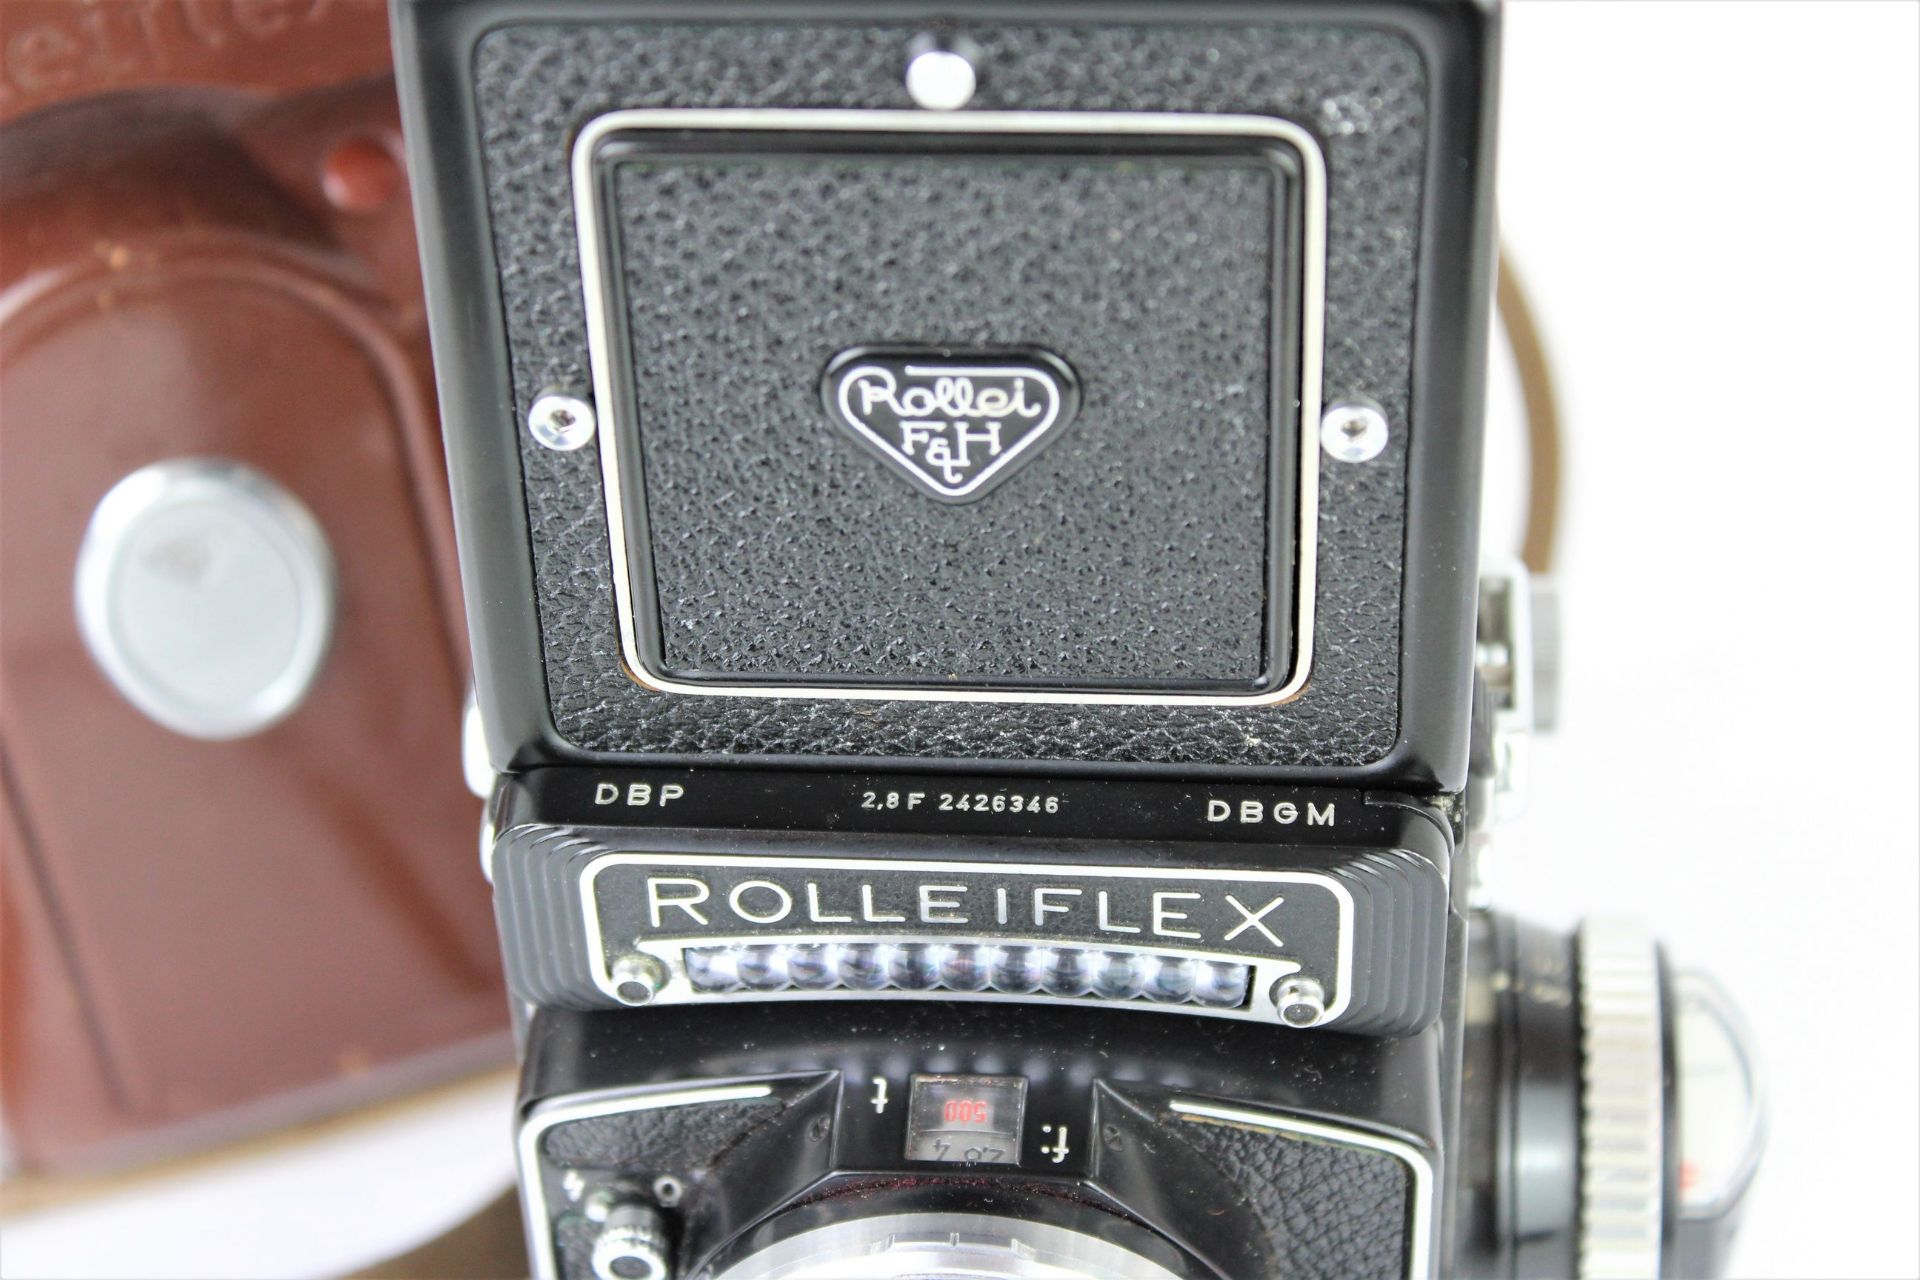 Rolleiflex DBP DBGM Kamera - Image 5 of 7